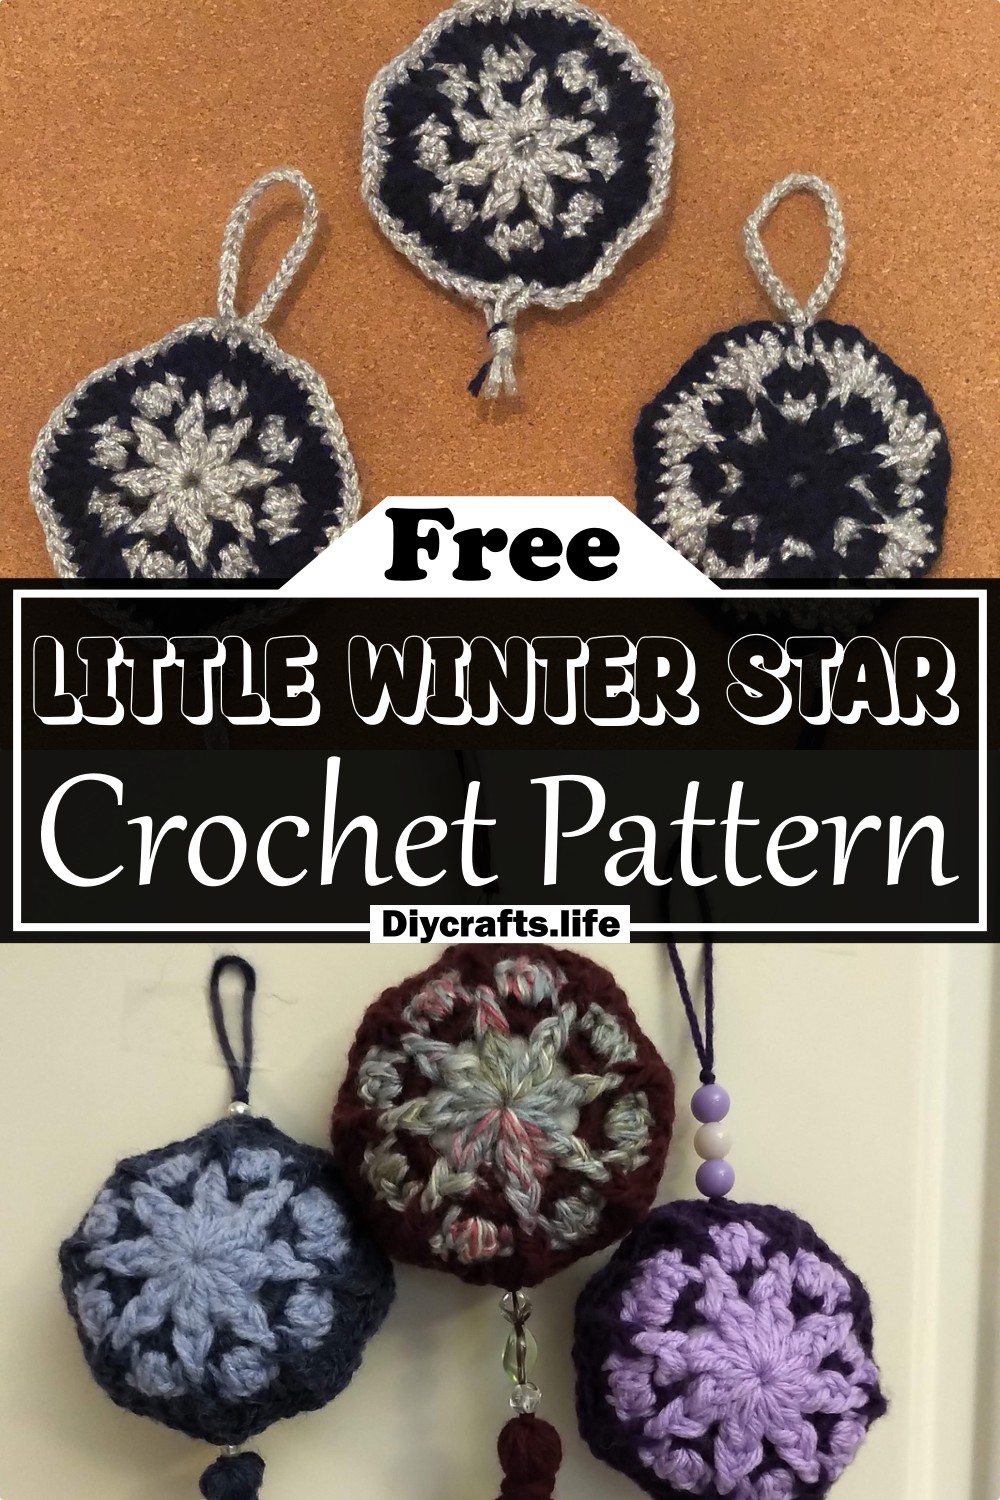 Crochet Little Winter Star Pattern